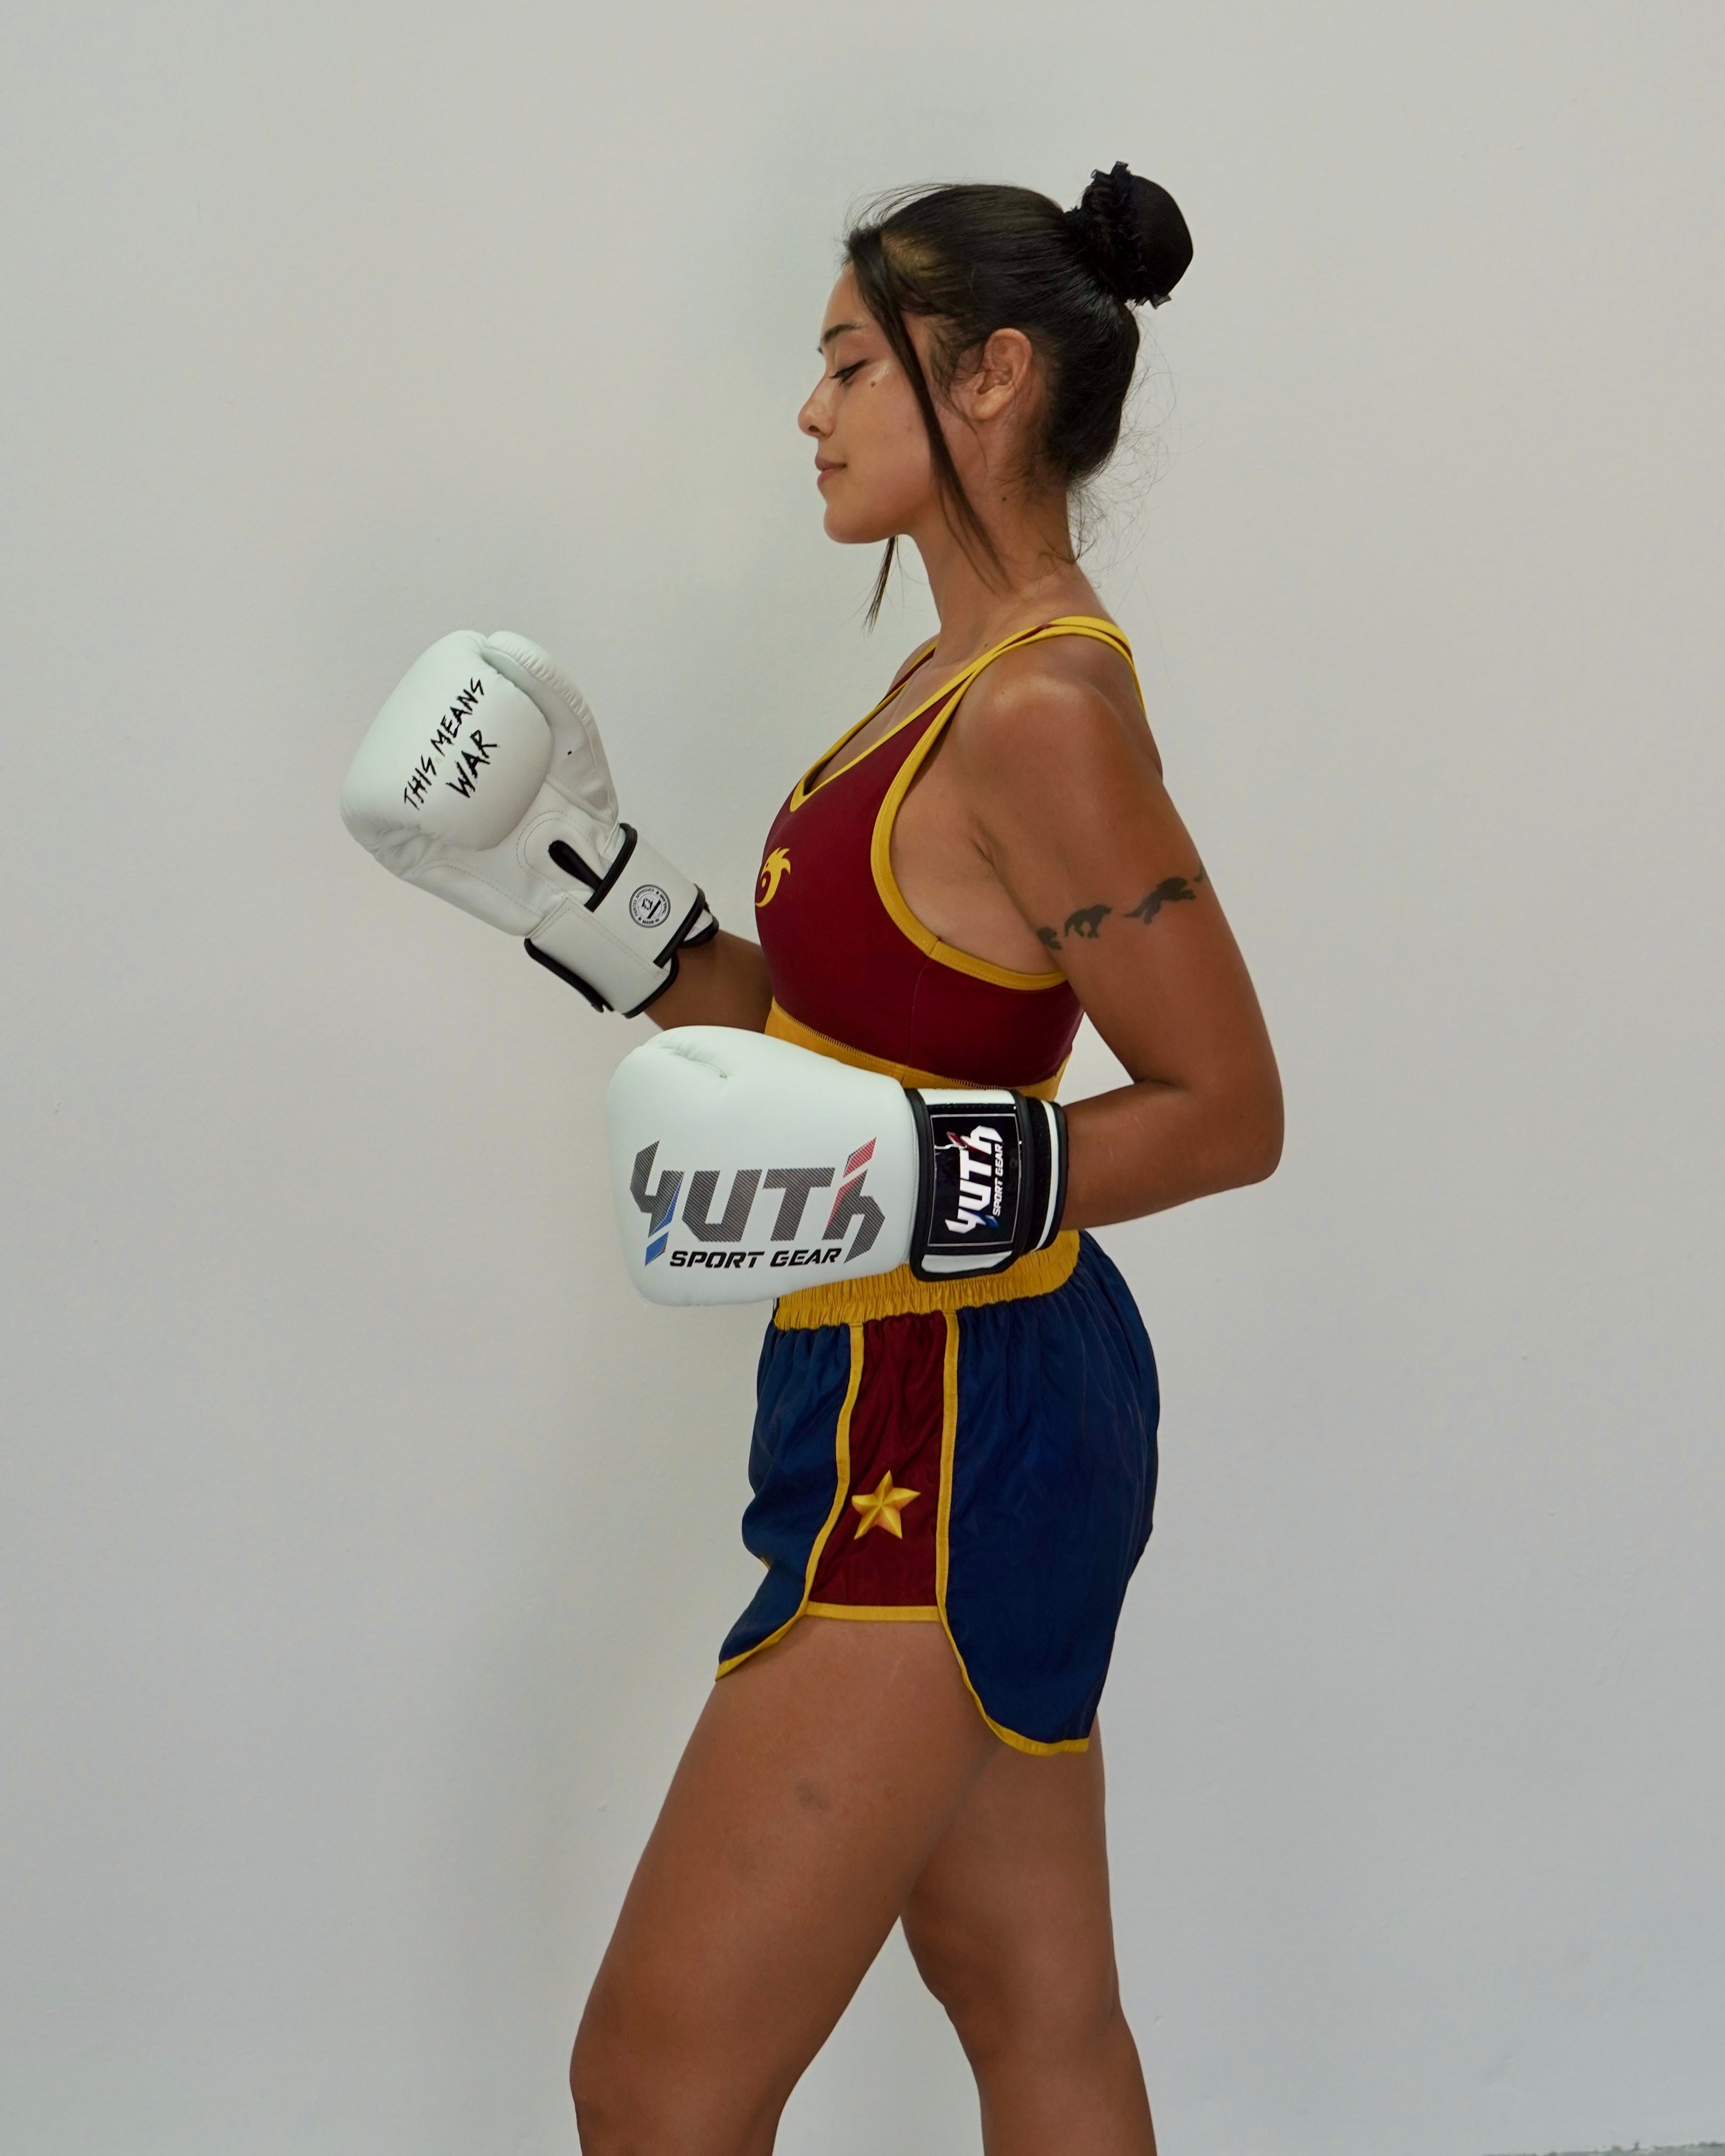 Fight Nomad Wonder Women Muay Thai Shorts - Fight.ShopYuth X Fight NomadXS